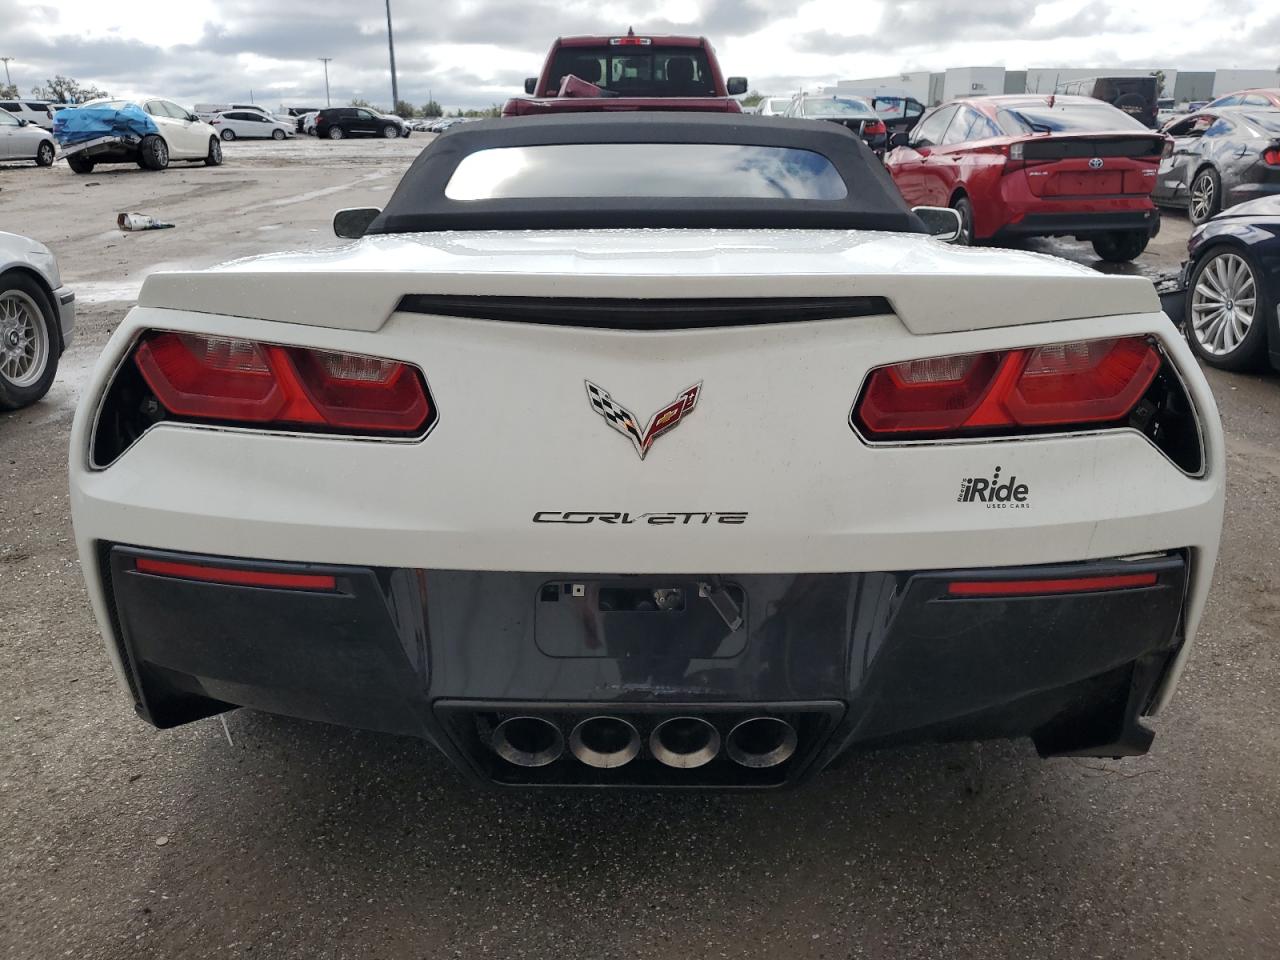 VIN 1G1YB3D77K5119197 Chevrolet Corvette S 2019 6